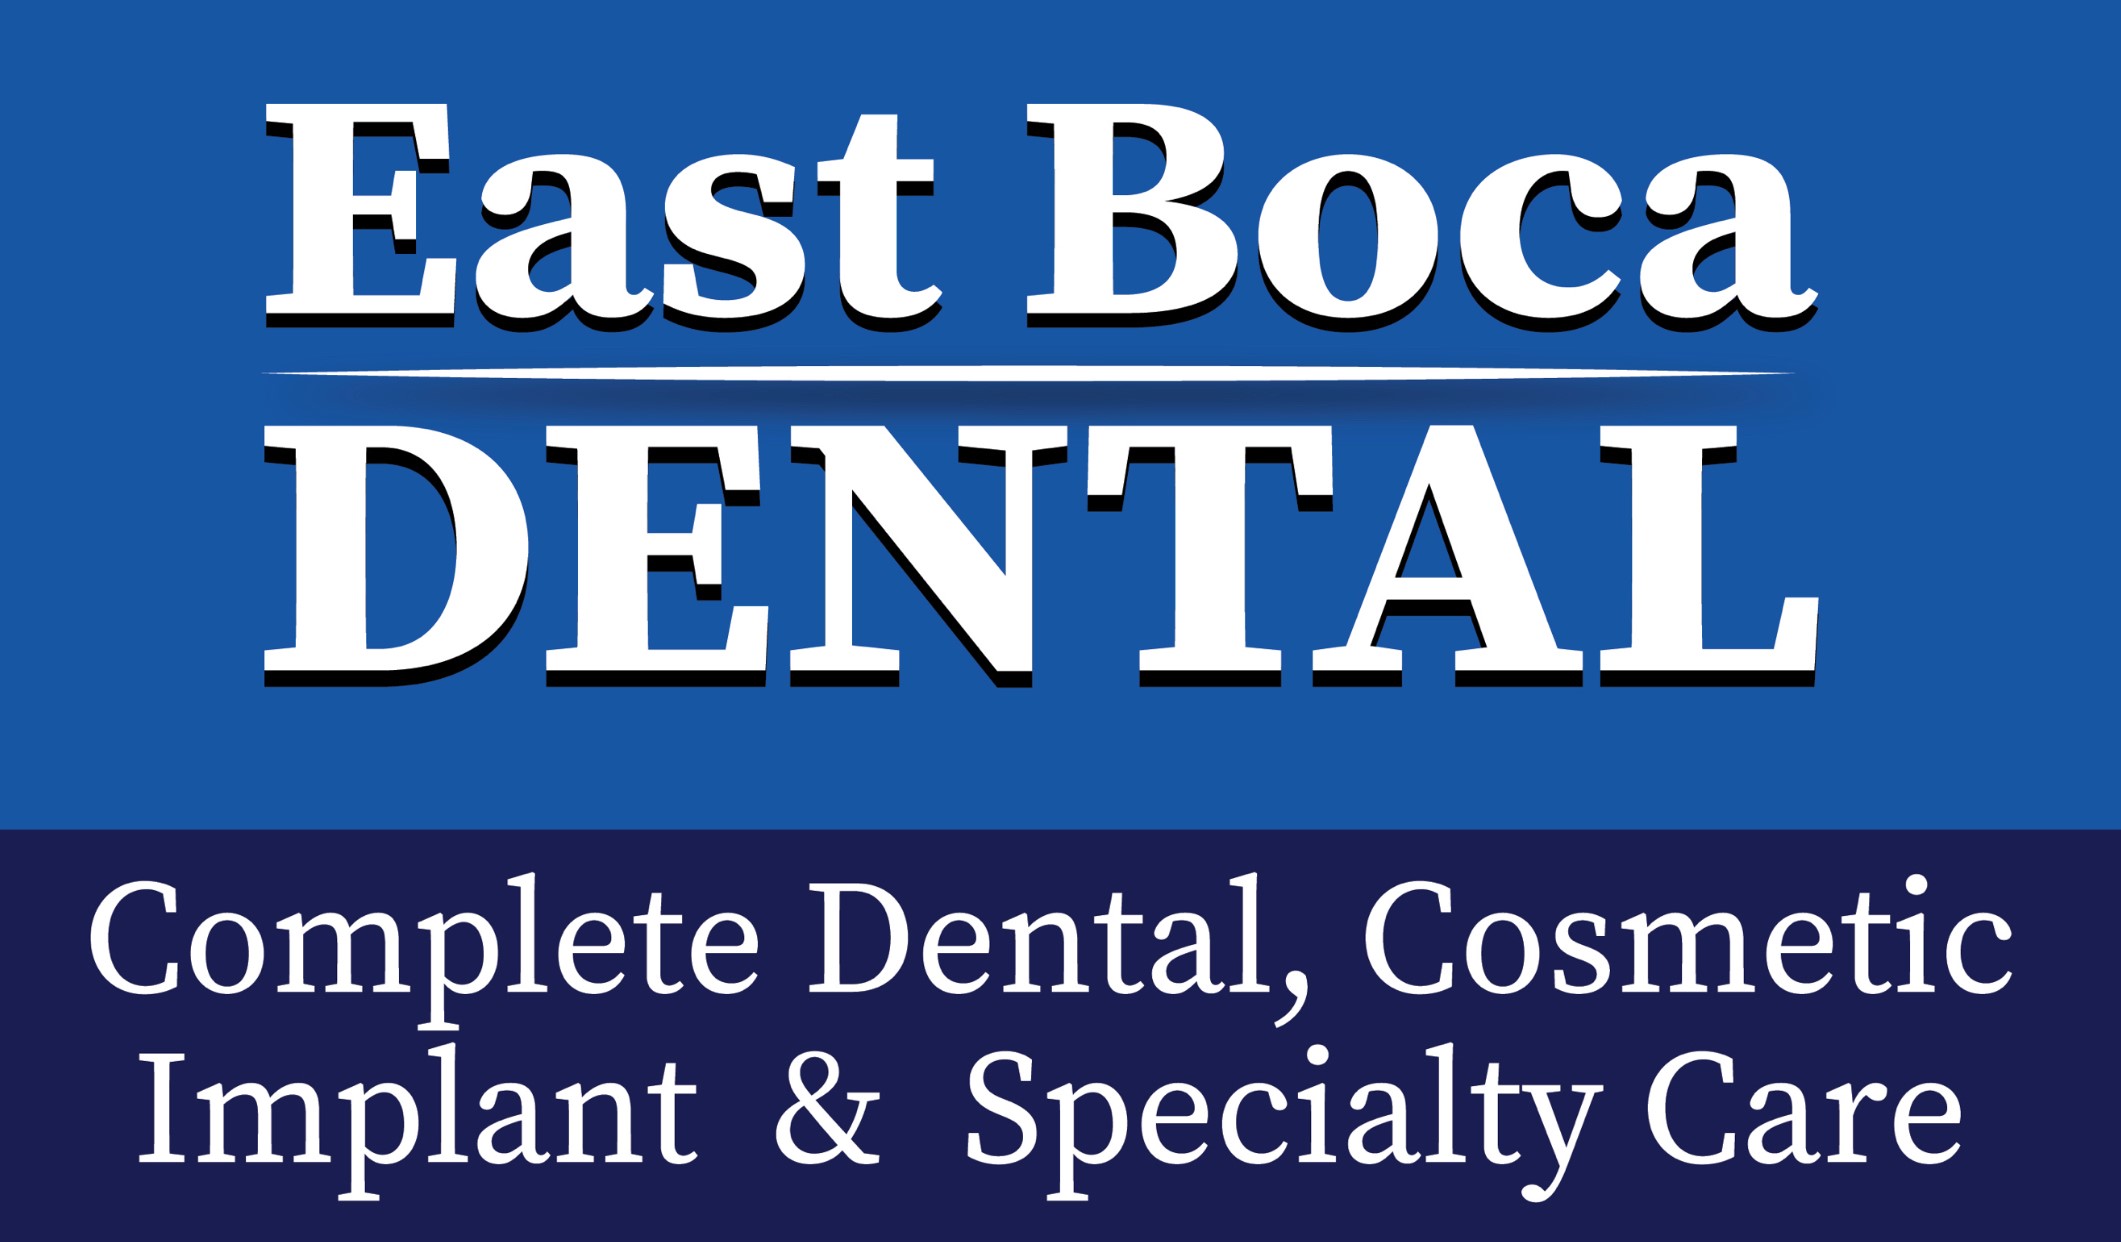 East Boca Dental